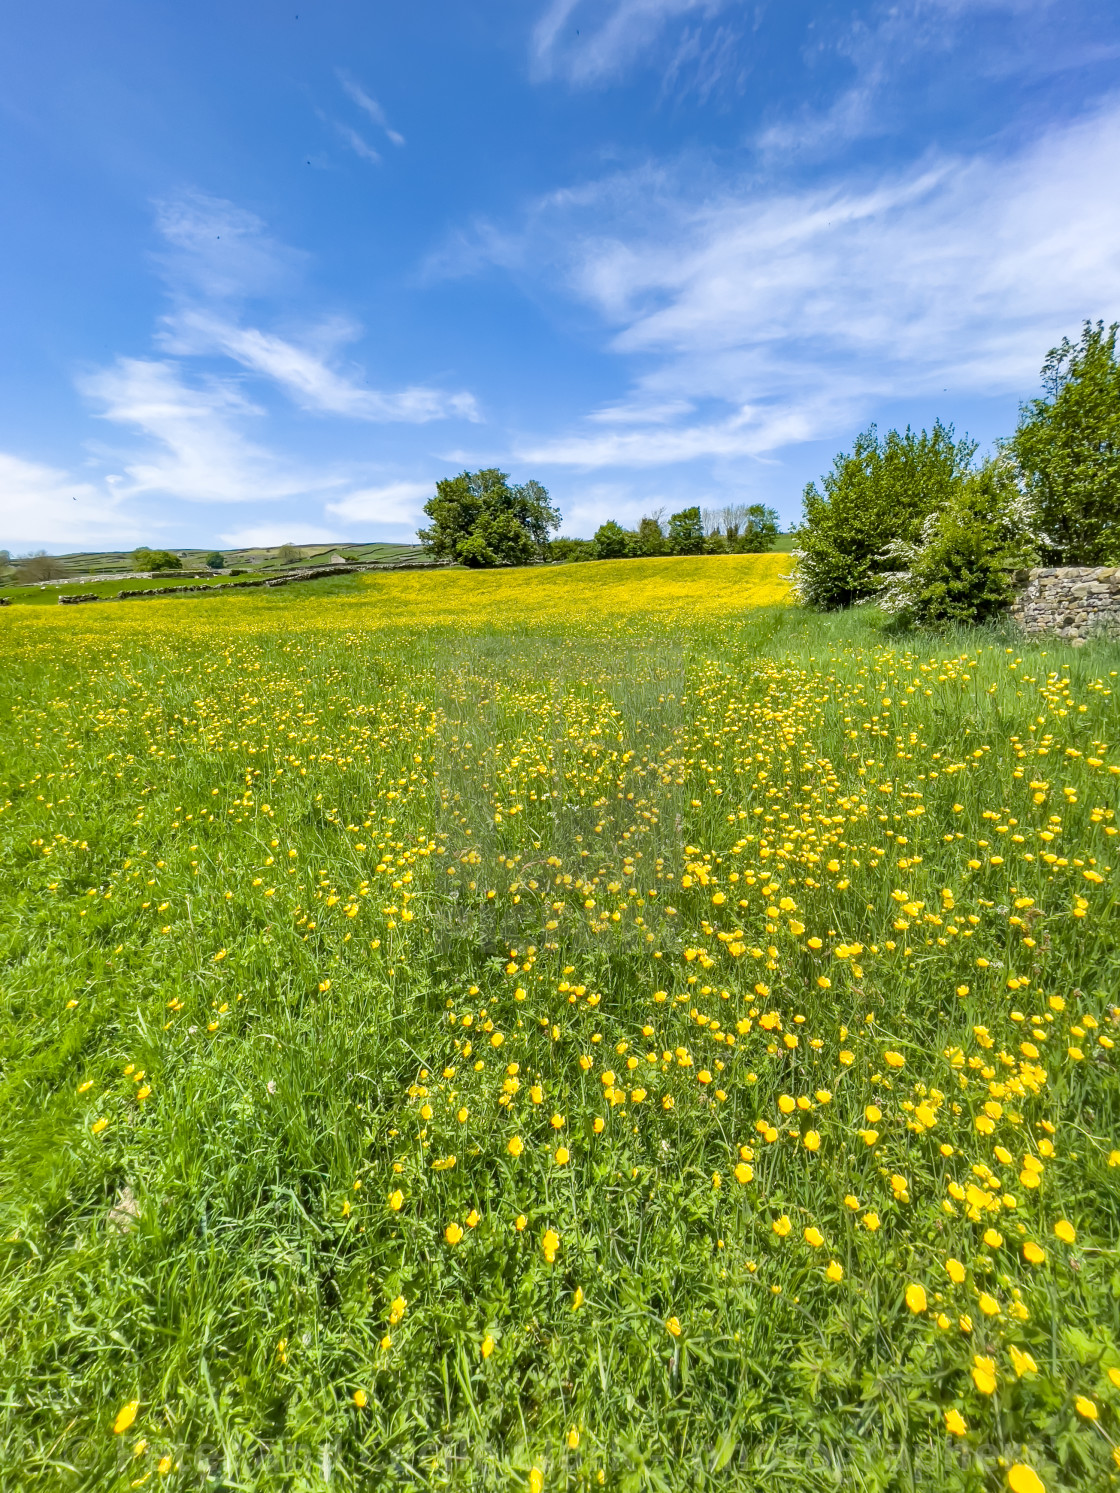 "Swaledale Wild Flower Meadow near Reeth." stock image